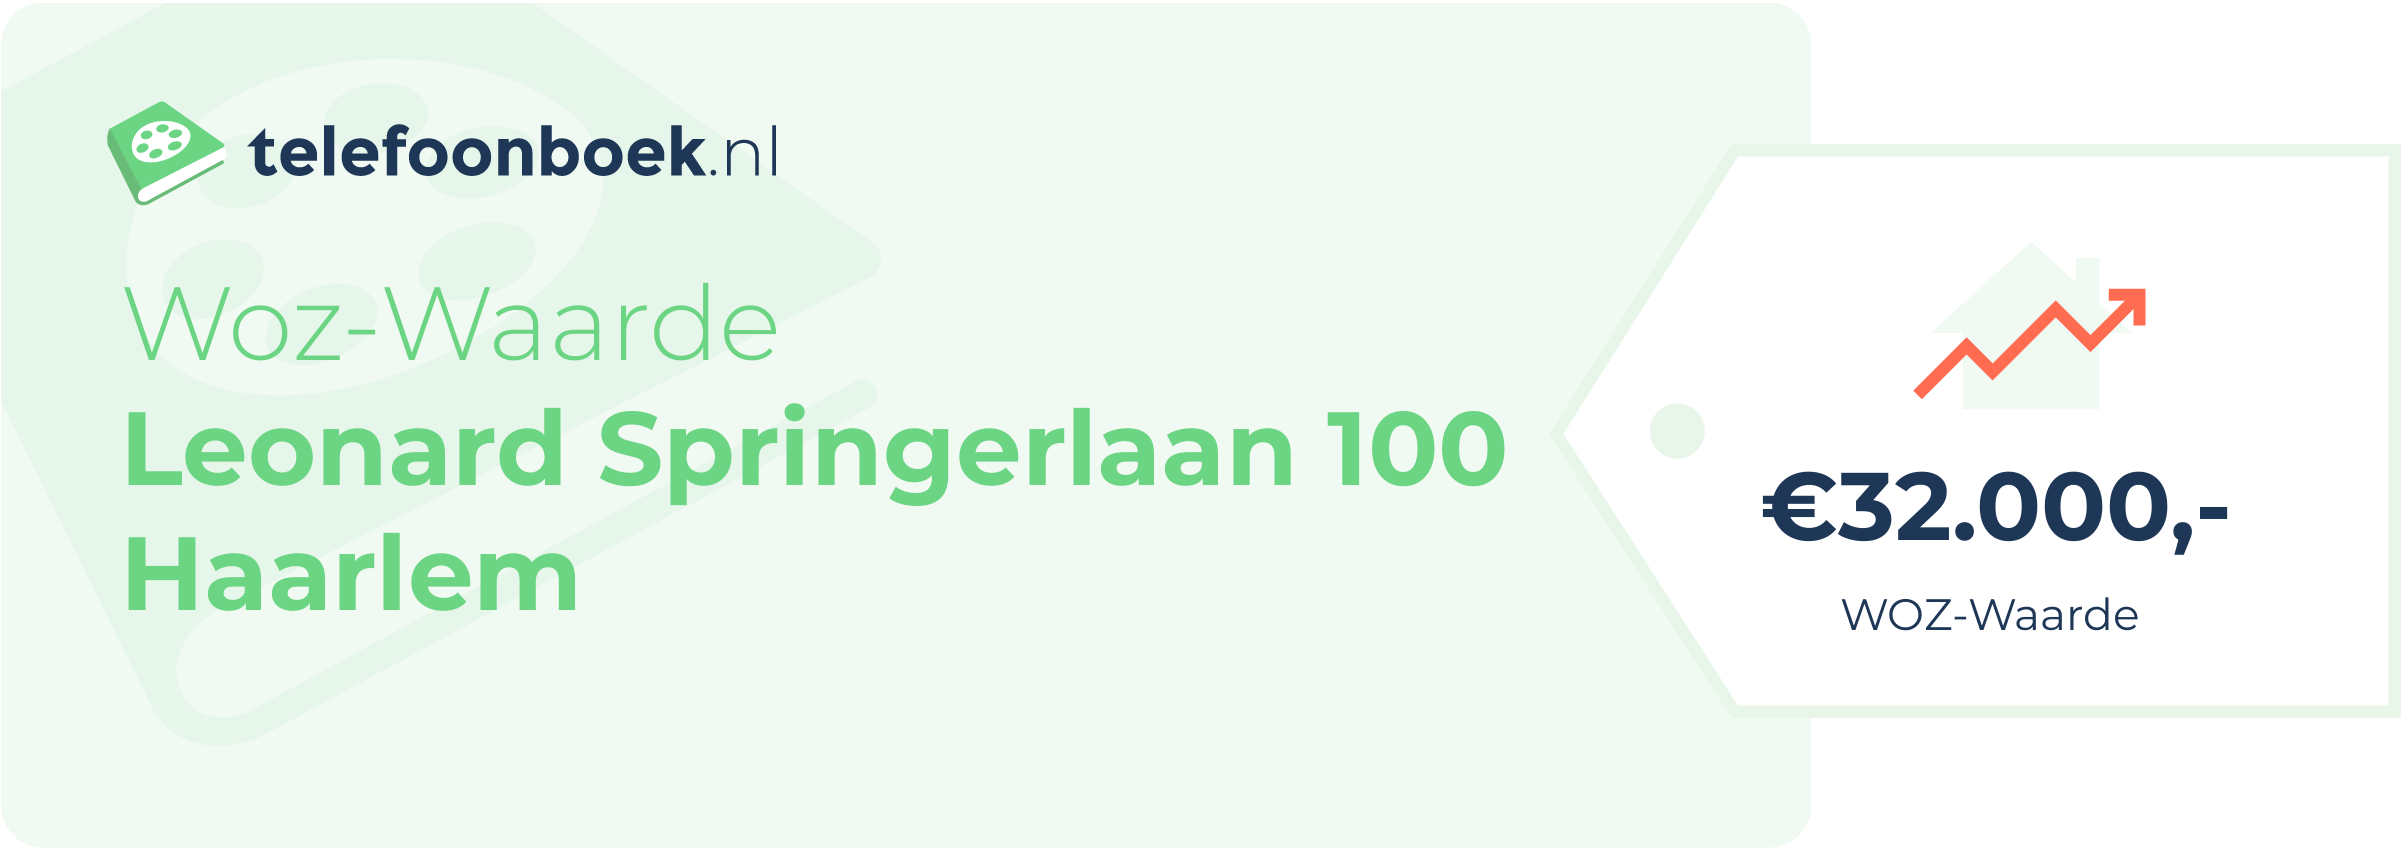 WOZ-waarde Leonard Springerlaan 100 Haarlem